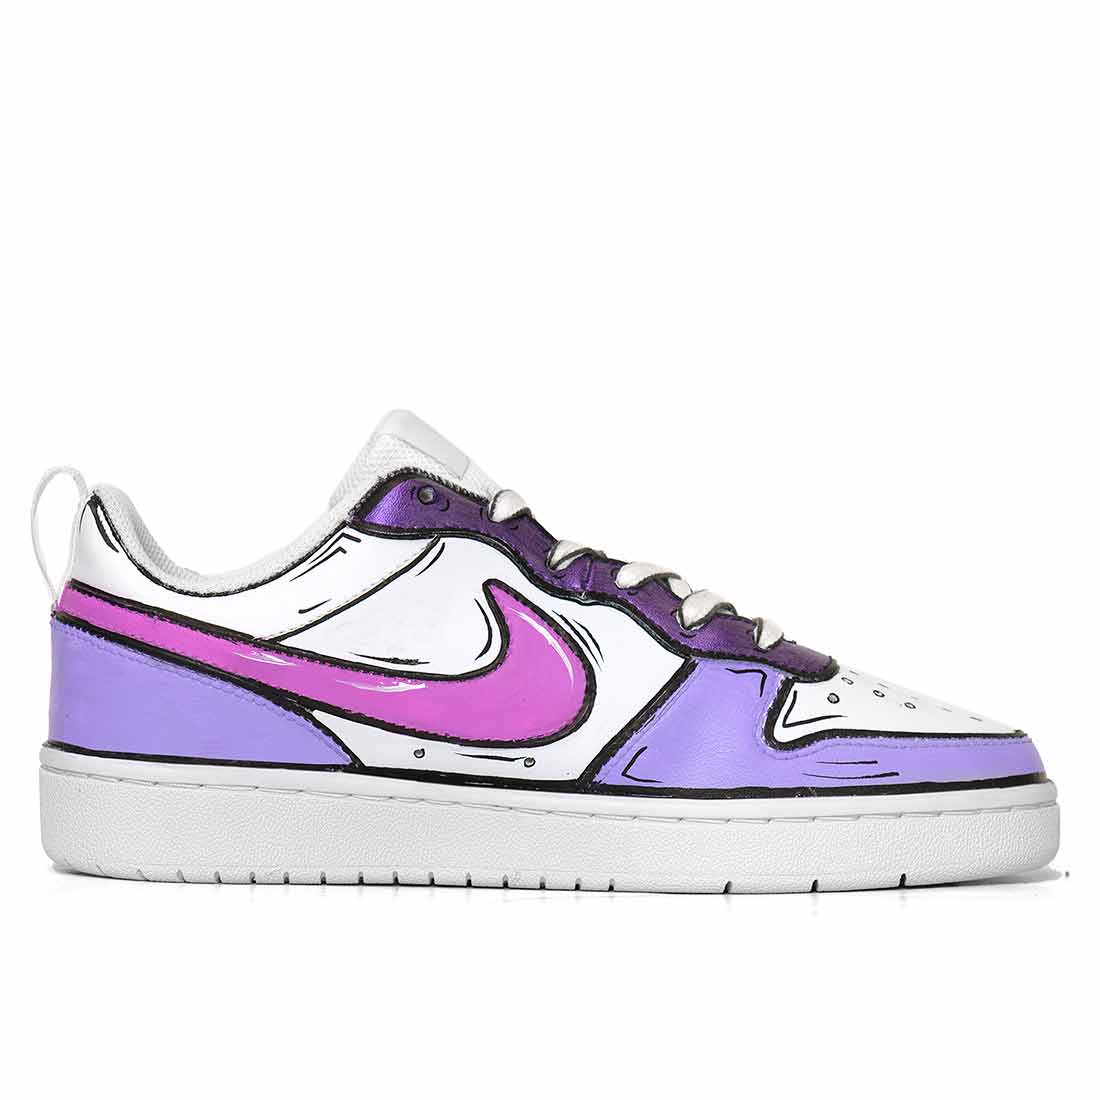 scarpe nike basse color pastello viola scuro effetto cartoon